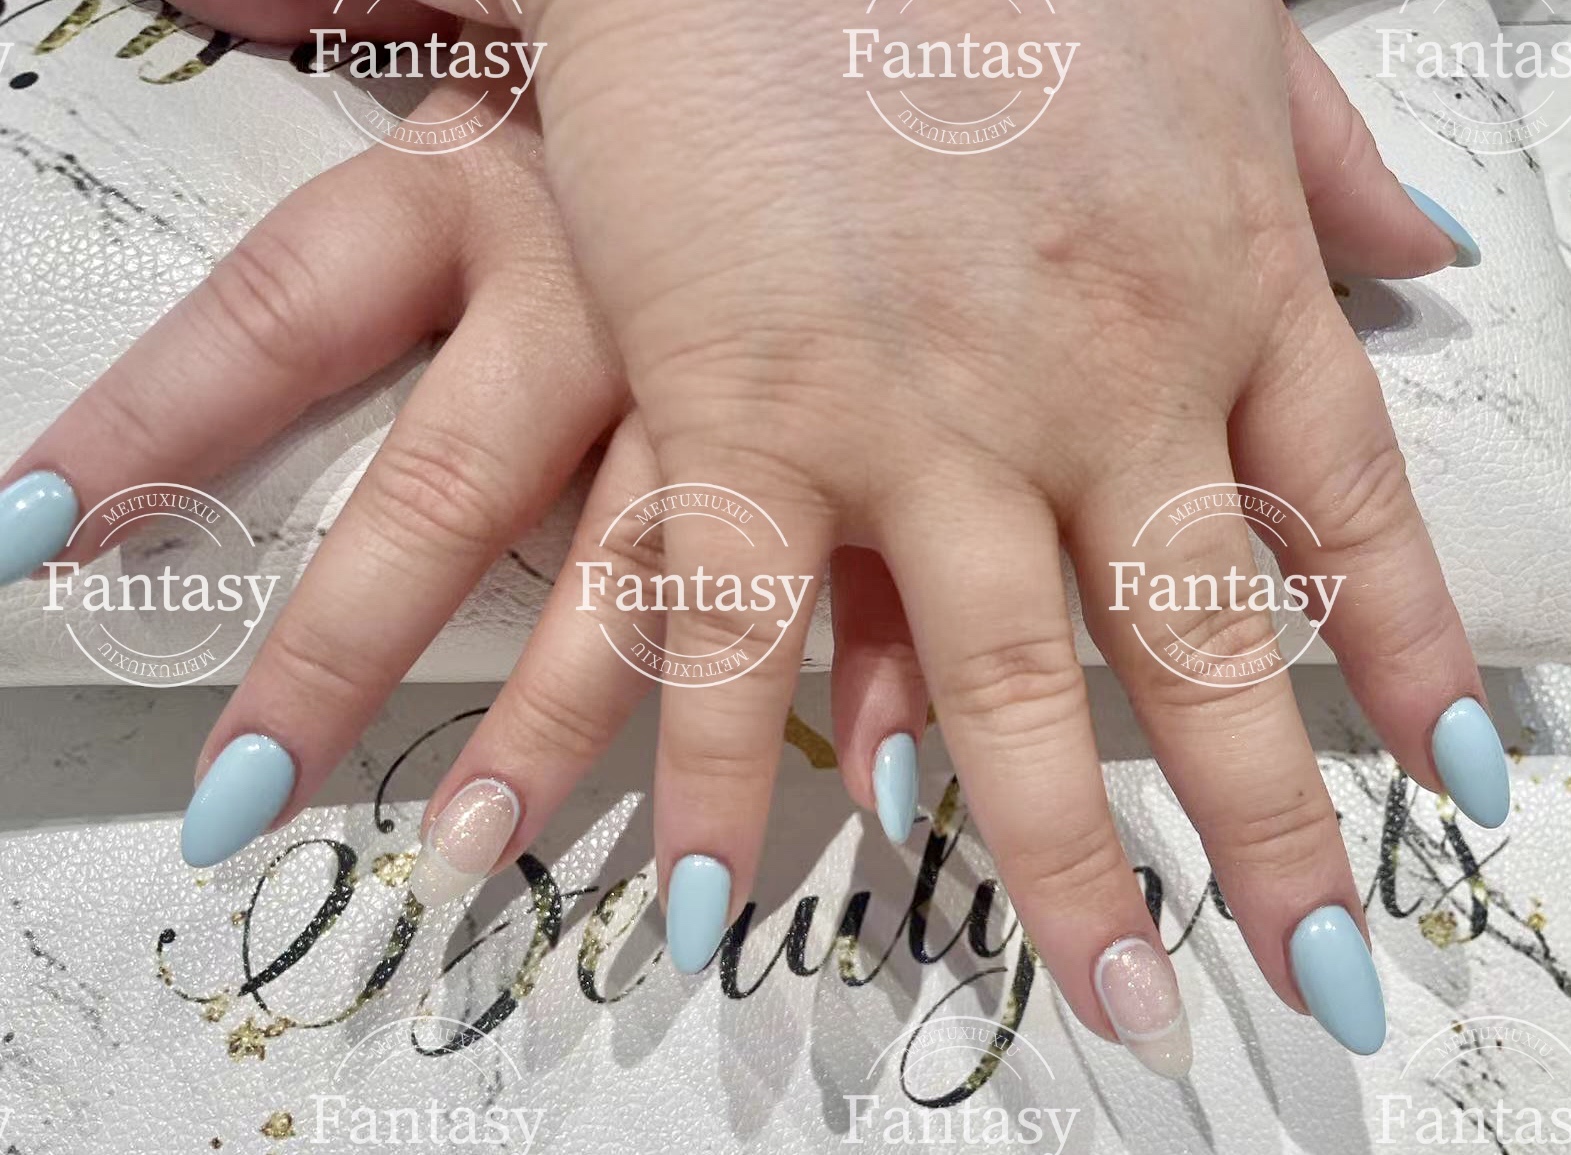 Fantasy Nails and Lashes Salon